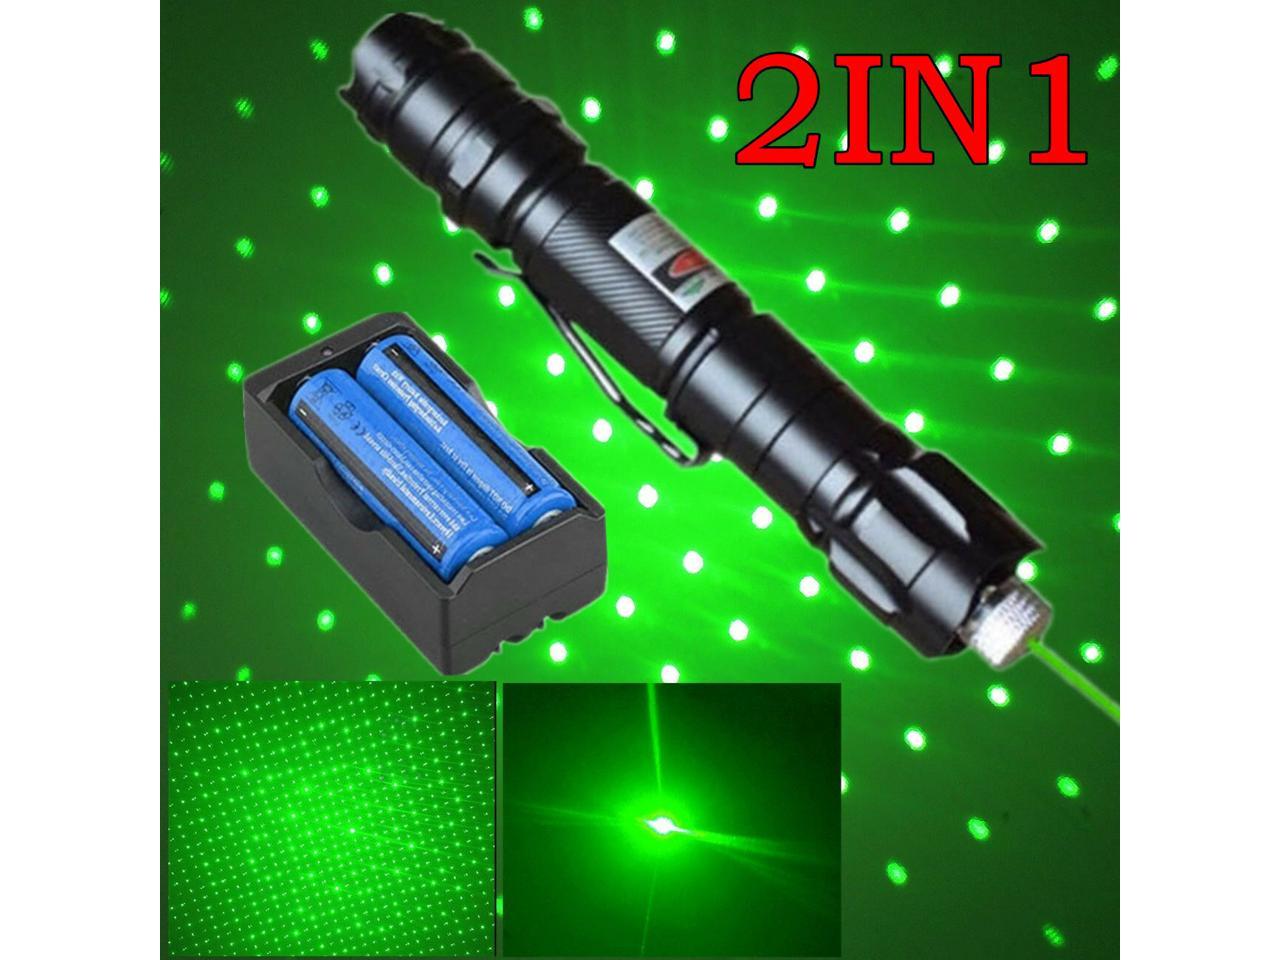 2PC 900Miles Visible Beam Red+Green Star Cap Bright Laser Pointer Pen+Batt+Char 